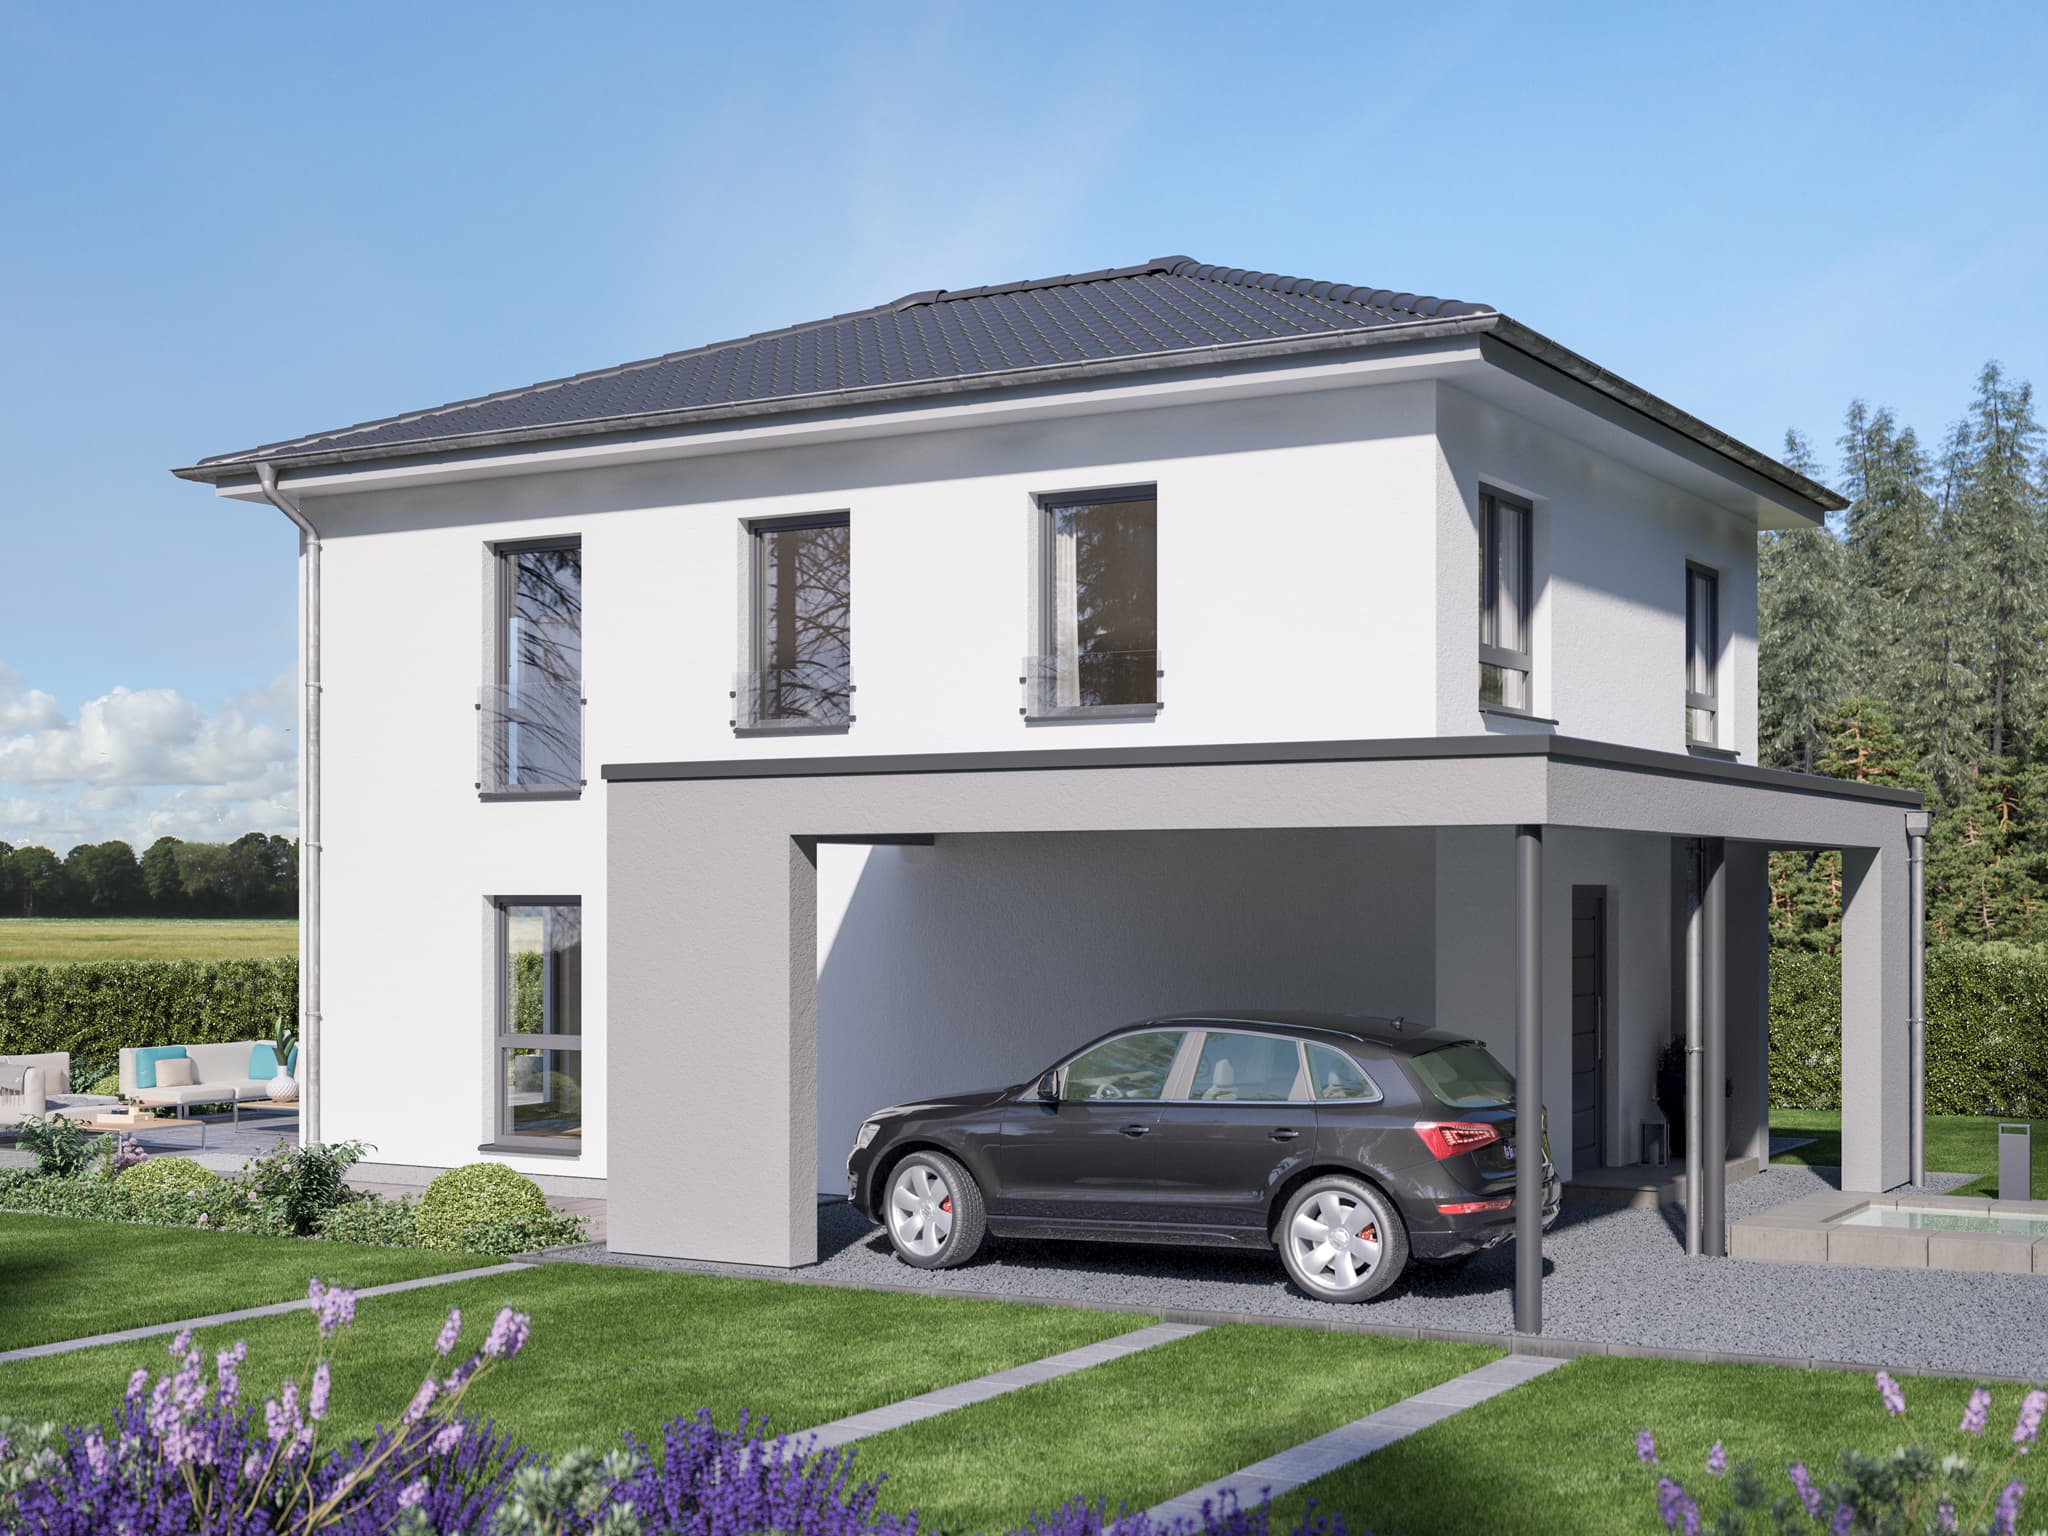 Einfamilienhaus mit Walmdach Architektur & integrierte Carport Garage mit überdachtem Hauseingang - Haus bauen Ideen Bien Zenker Fertighaus EVOLUTION 139 V8 - HausbauDirekt.de